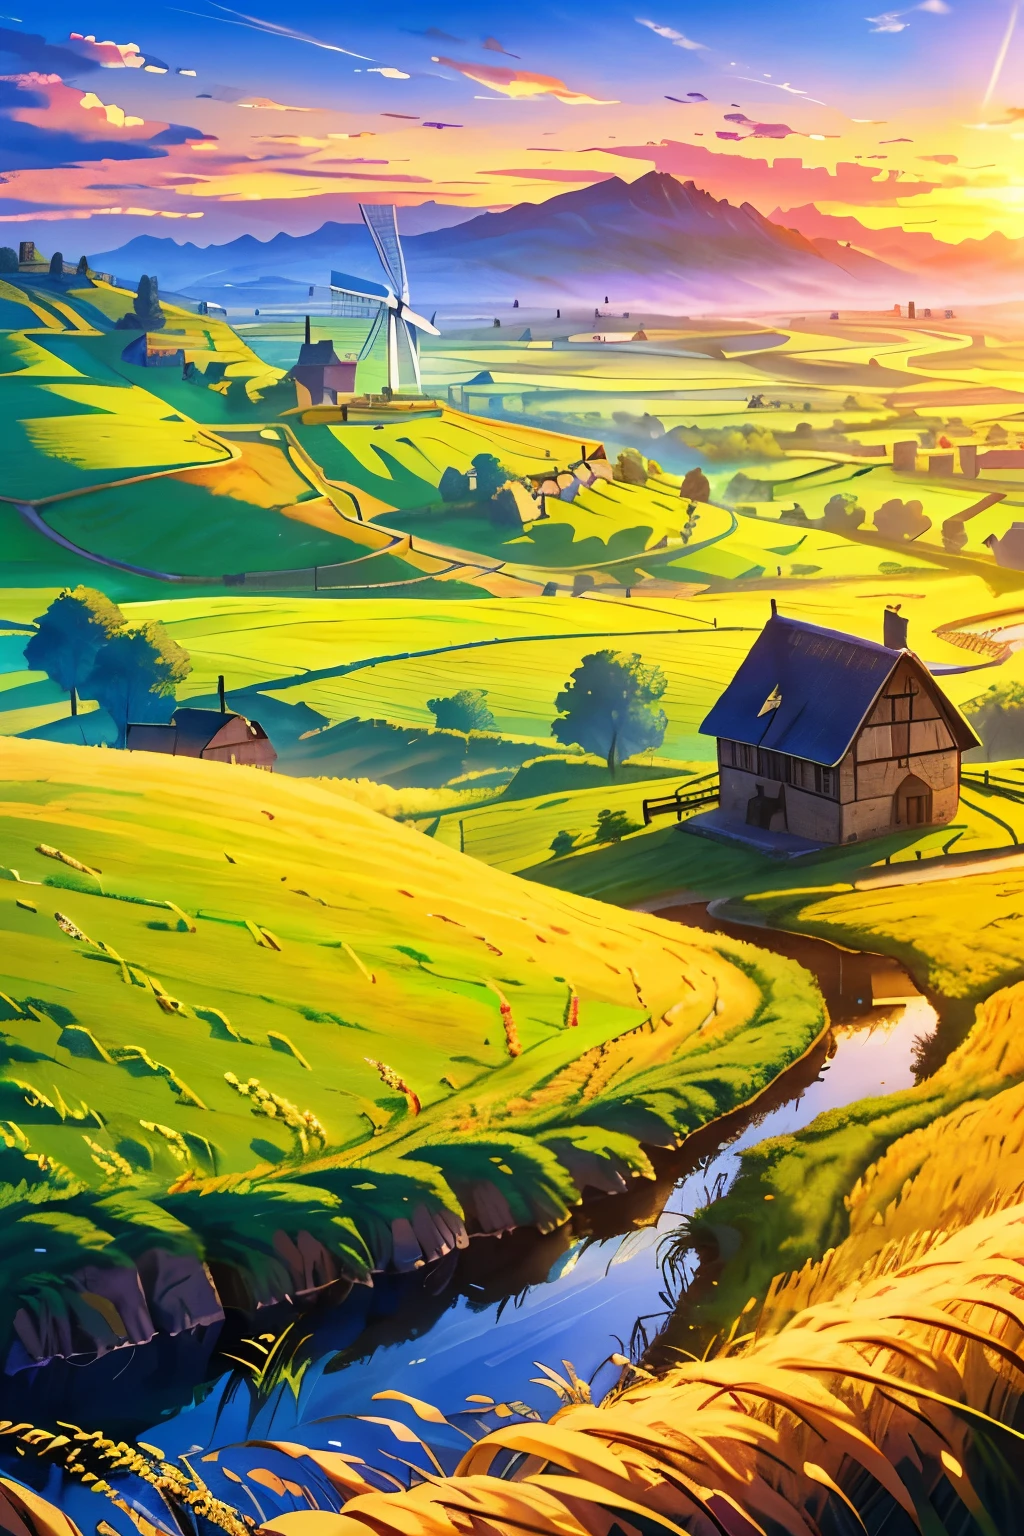 밀밭, 풍차 비슷한 것, 중세 시대, 골짜기, 구름, 낮, 잔디, 작은 마을, 조약돌 길, 밀짚 오두막, (걸작, 최고의 품질: 1.2)